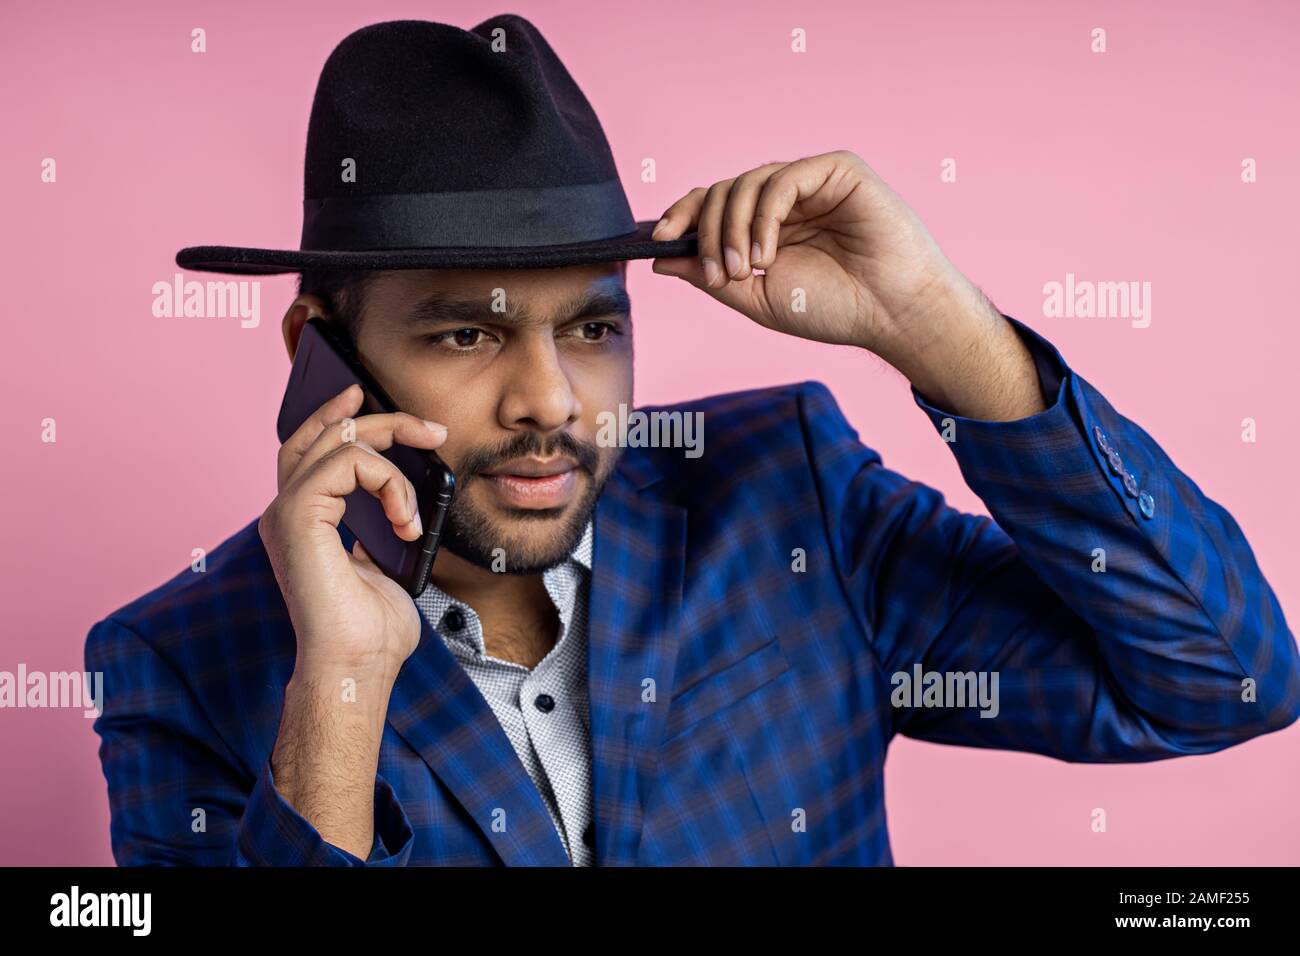 Ritratto di closeup dell'imprenditore indiano elegante che indossa l'abito blu controllato, cappello toccante, che parla sul telefono mobile con espressione seria mentre si siede Foto Stock